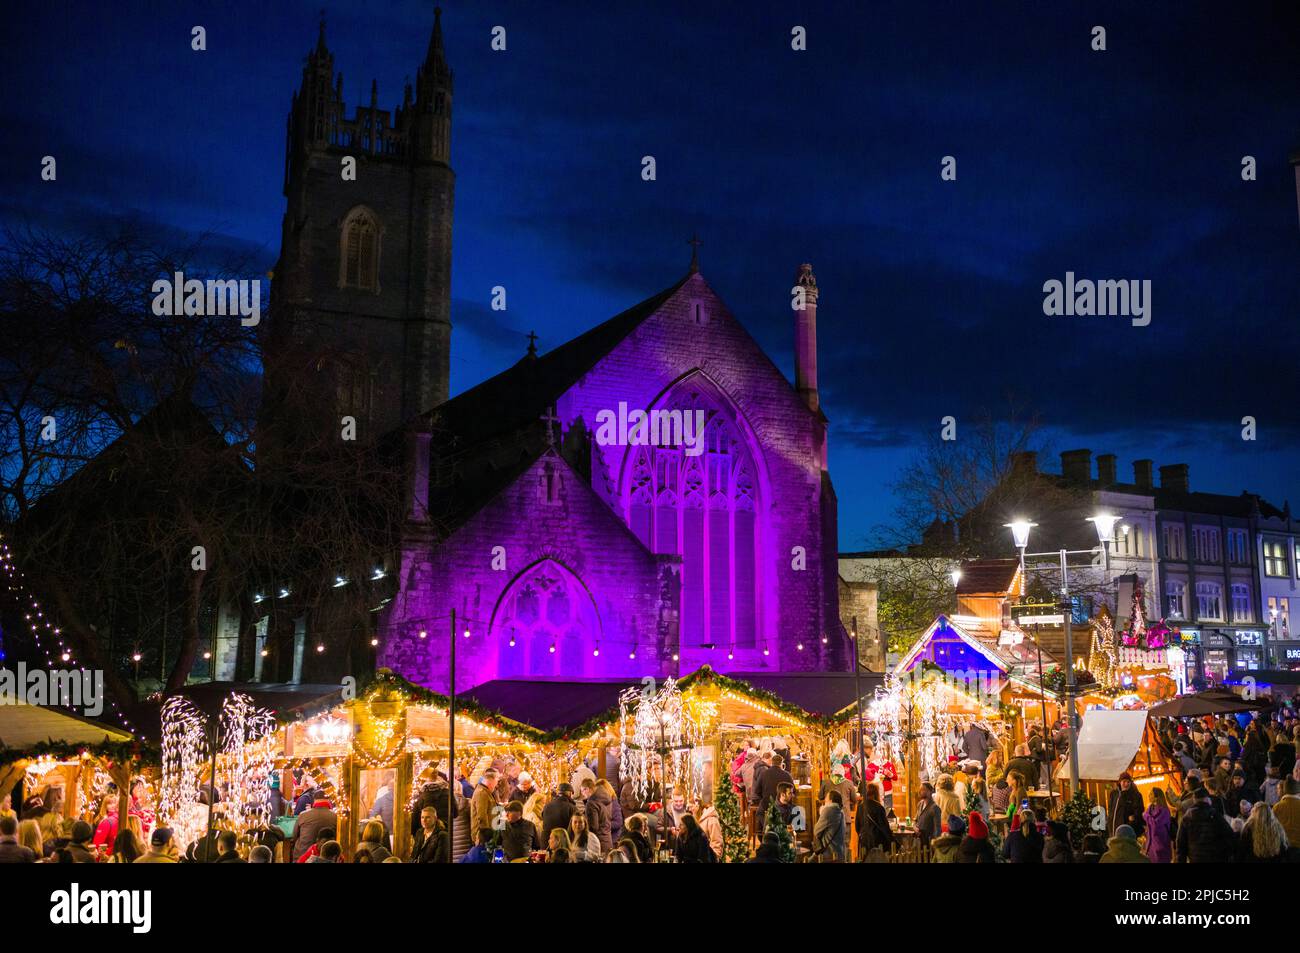 Marchés de Noël au centre-ville de Cardiff, au pays de Galles, au Royaume-Uni, pendant l'heure de Noël. Banque D'Images